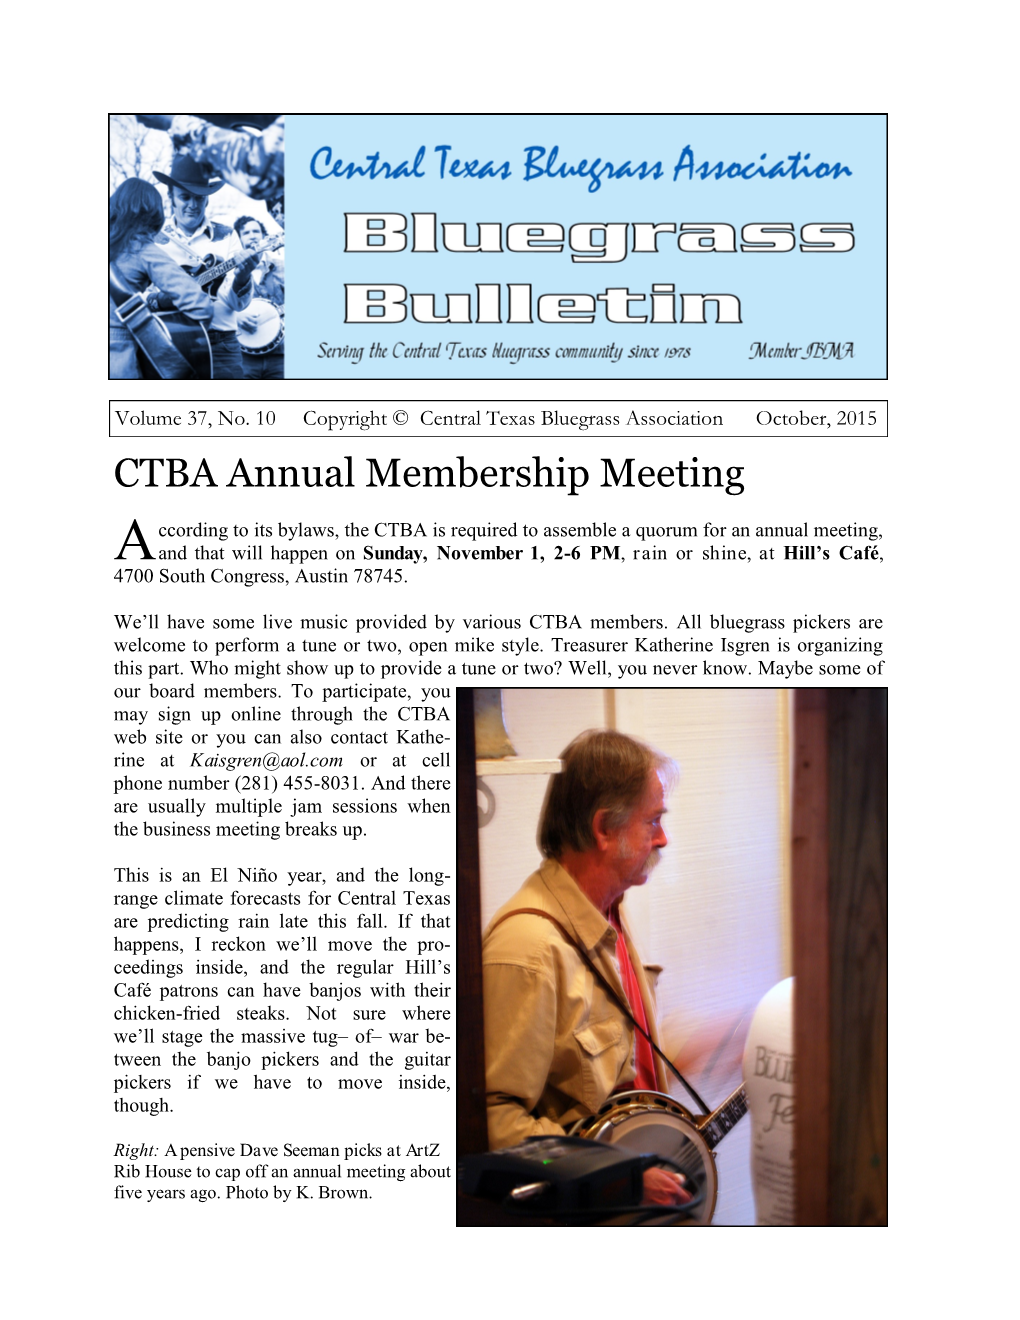 CTBA Annual Membership Meeting